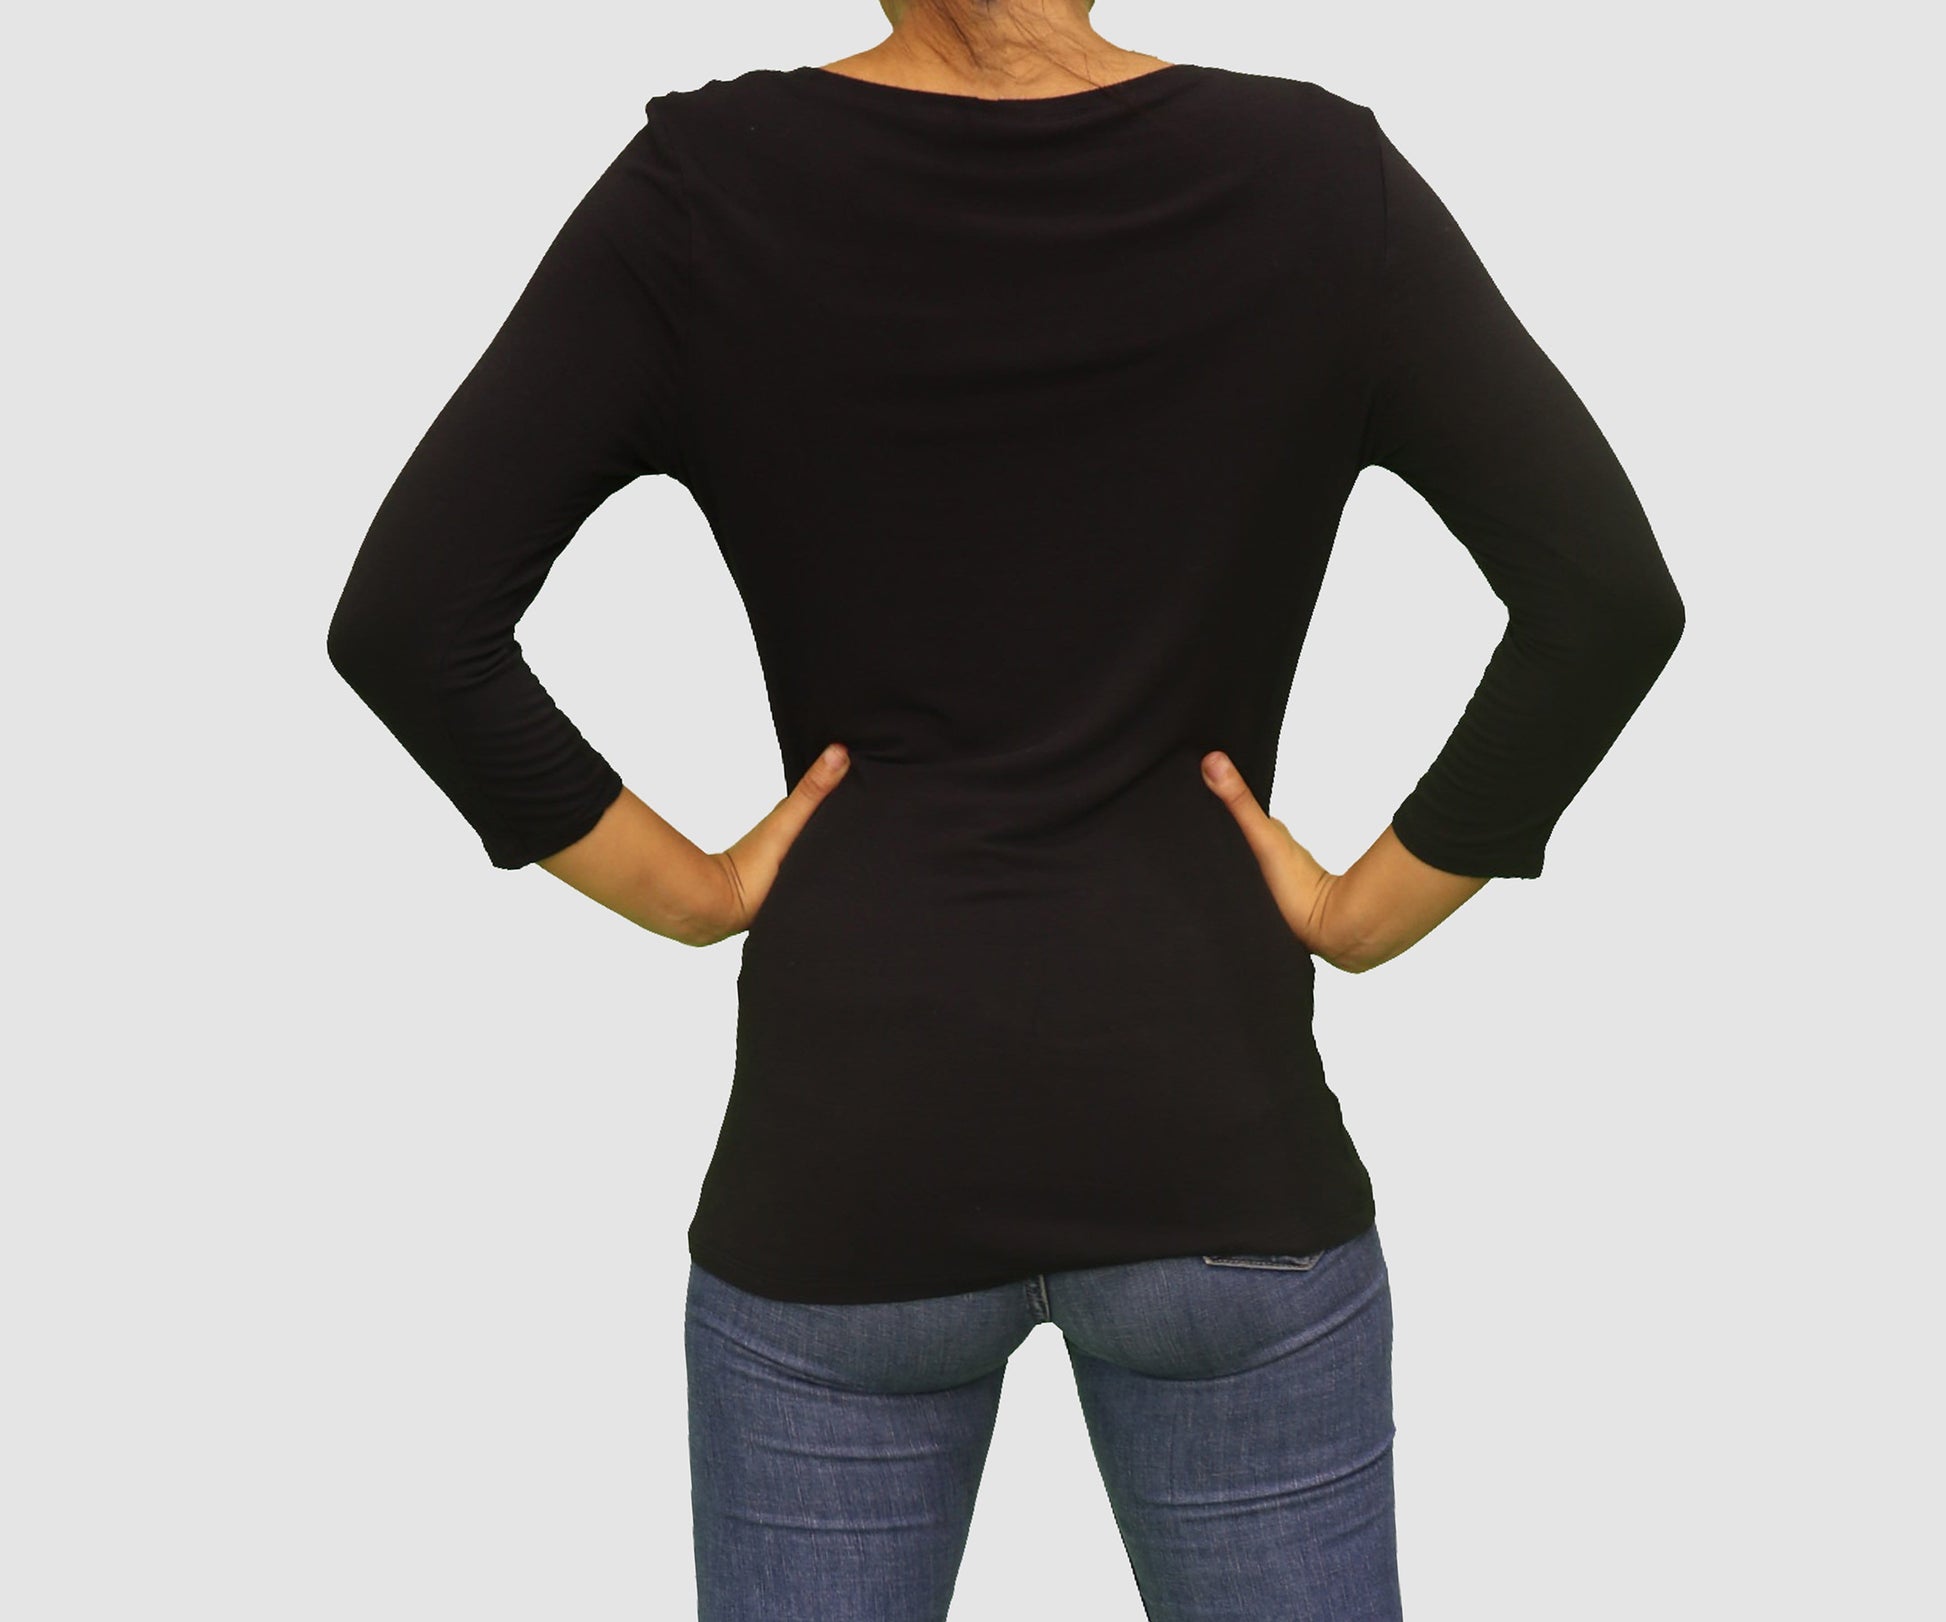 Tahari Womens Tops Medium / Black Long Sleeve Top